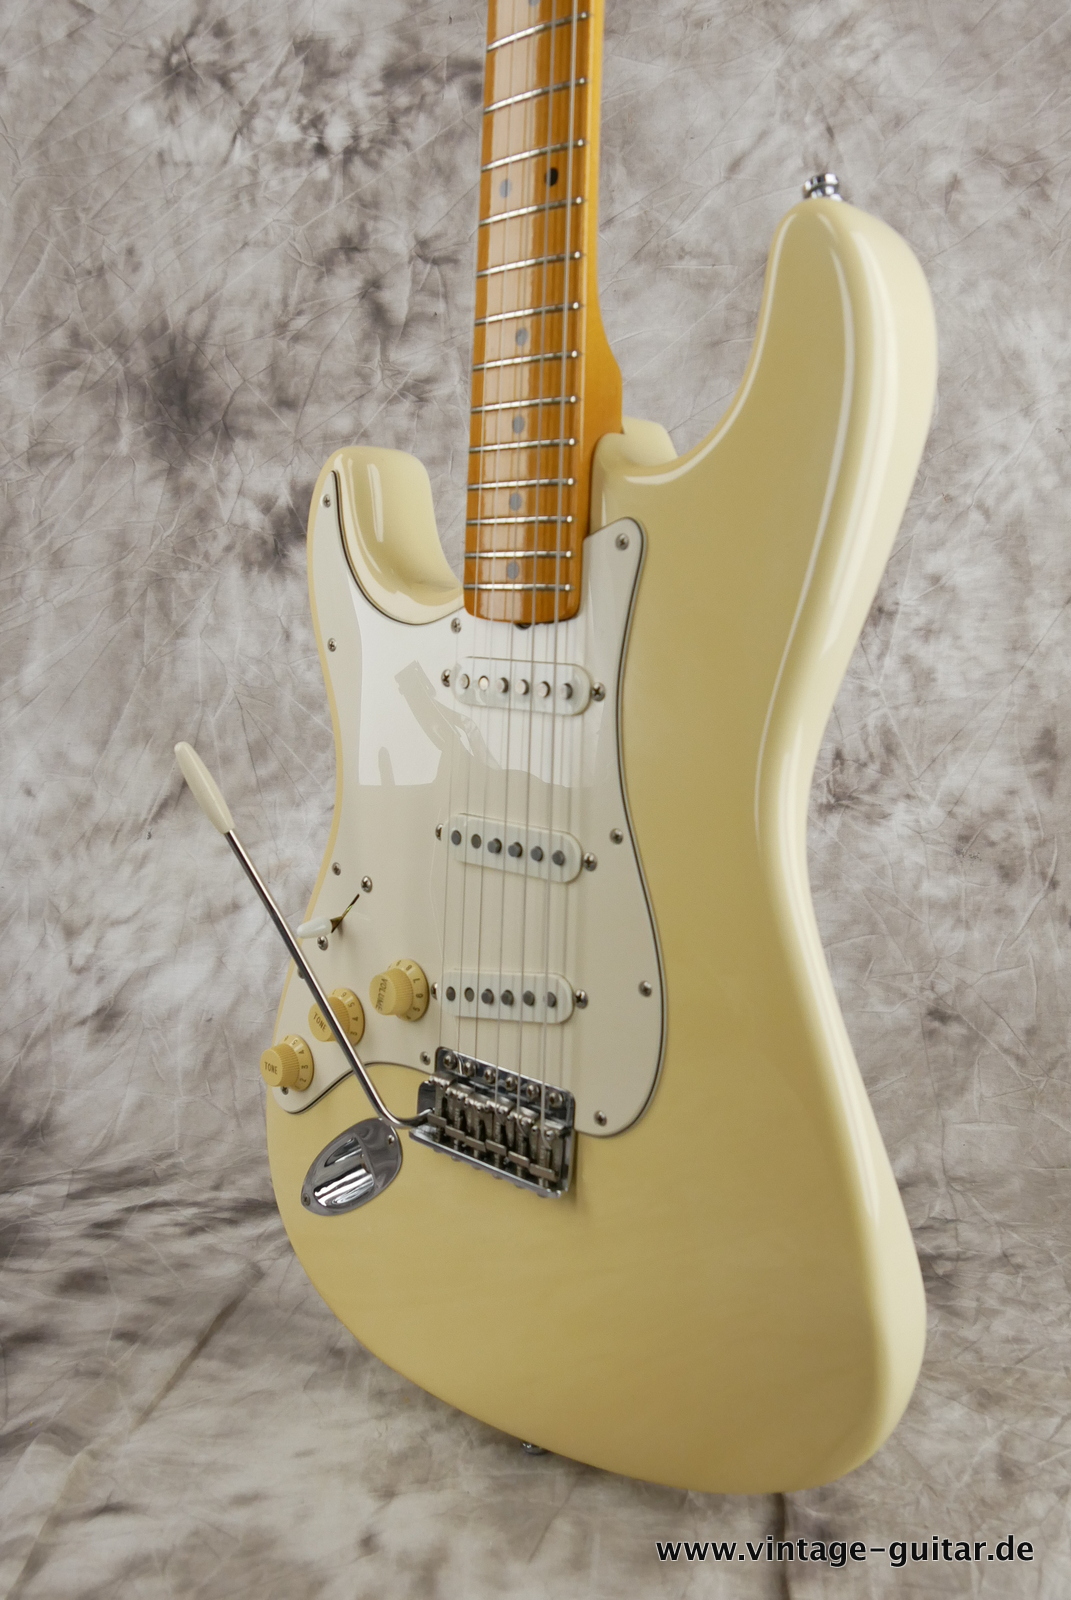 img/vintage/5476/Fender_Stratocaster_Jimi_Hemdrix_Tribute_1997_olympic_white-010.JPG